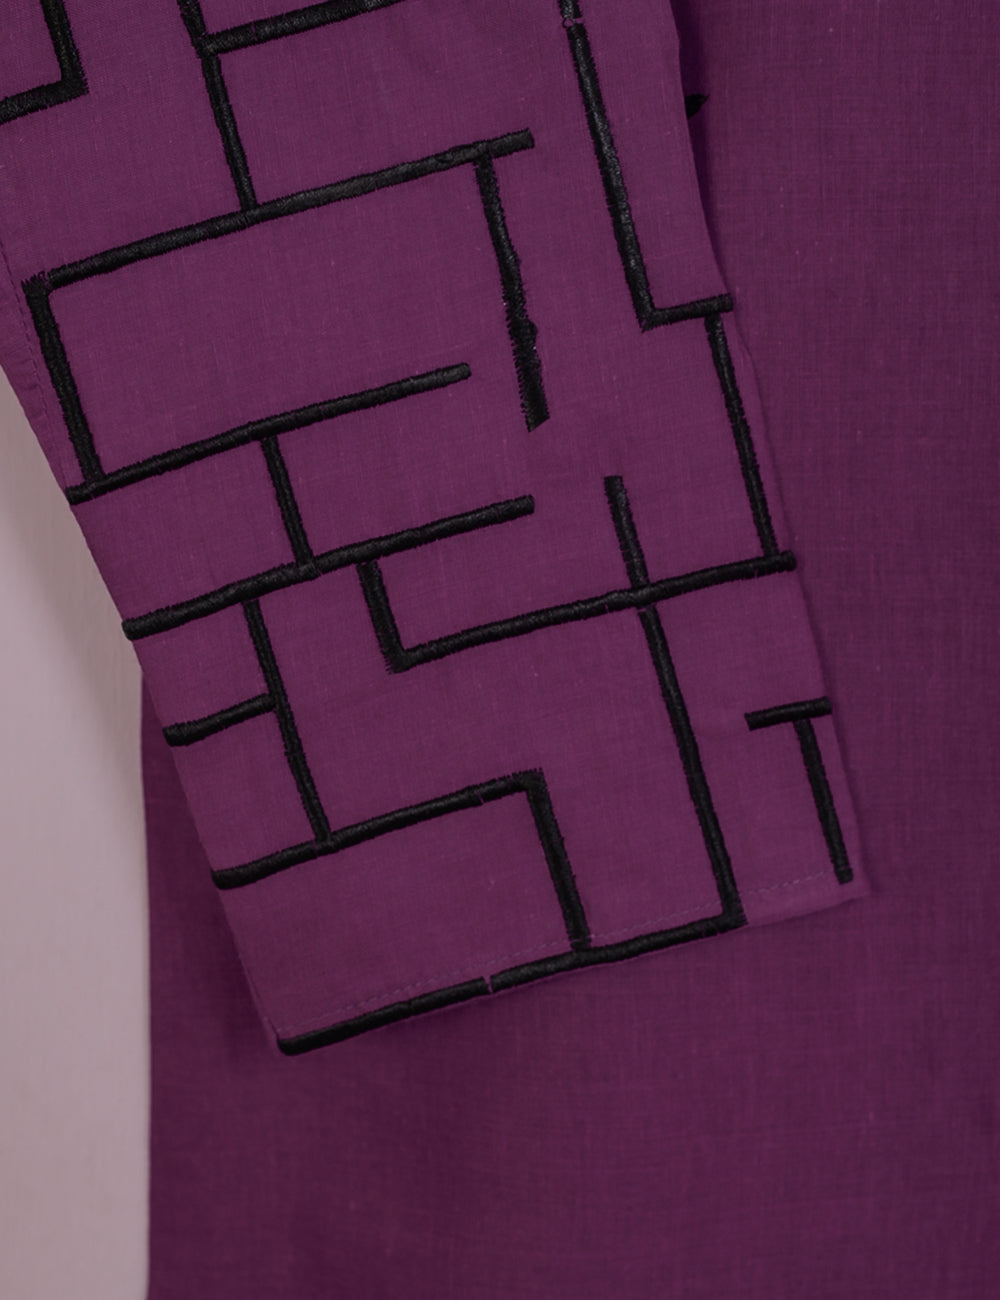 TS-112B-Purple - Cotton Embroidered Stitched Kurti